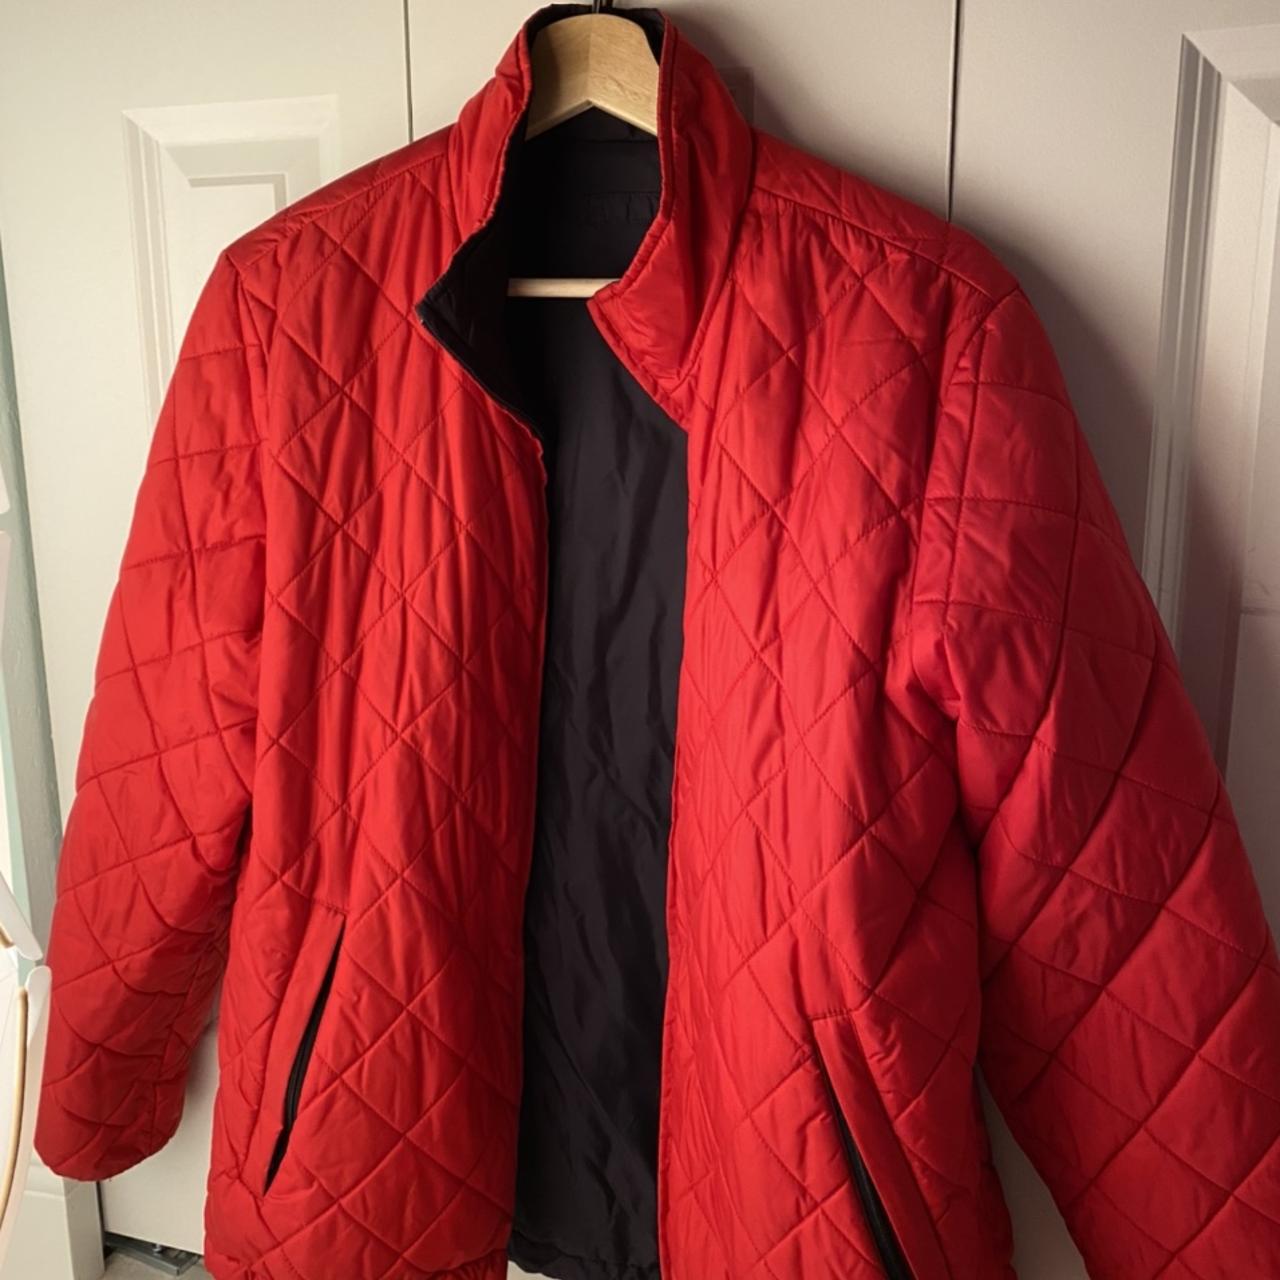 Red vintage puffer jacket. Adjustable fits... - Depop